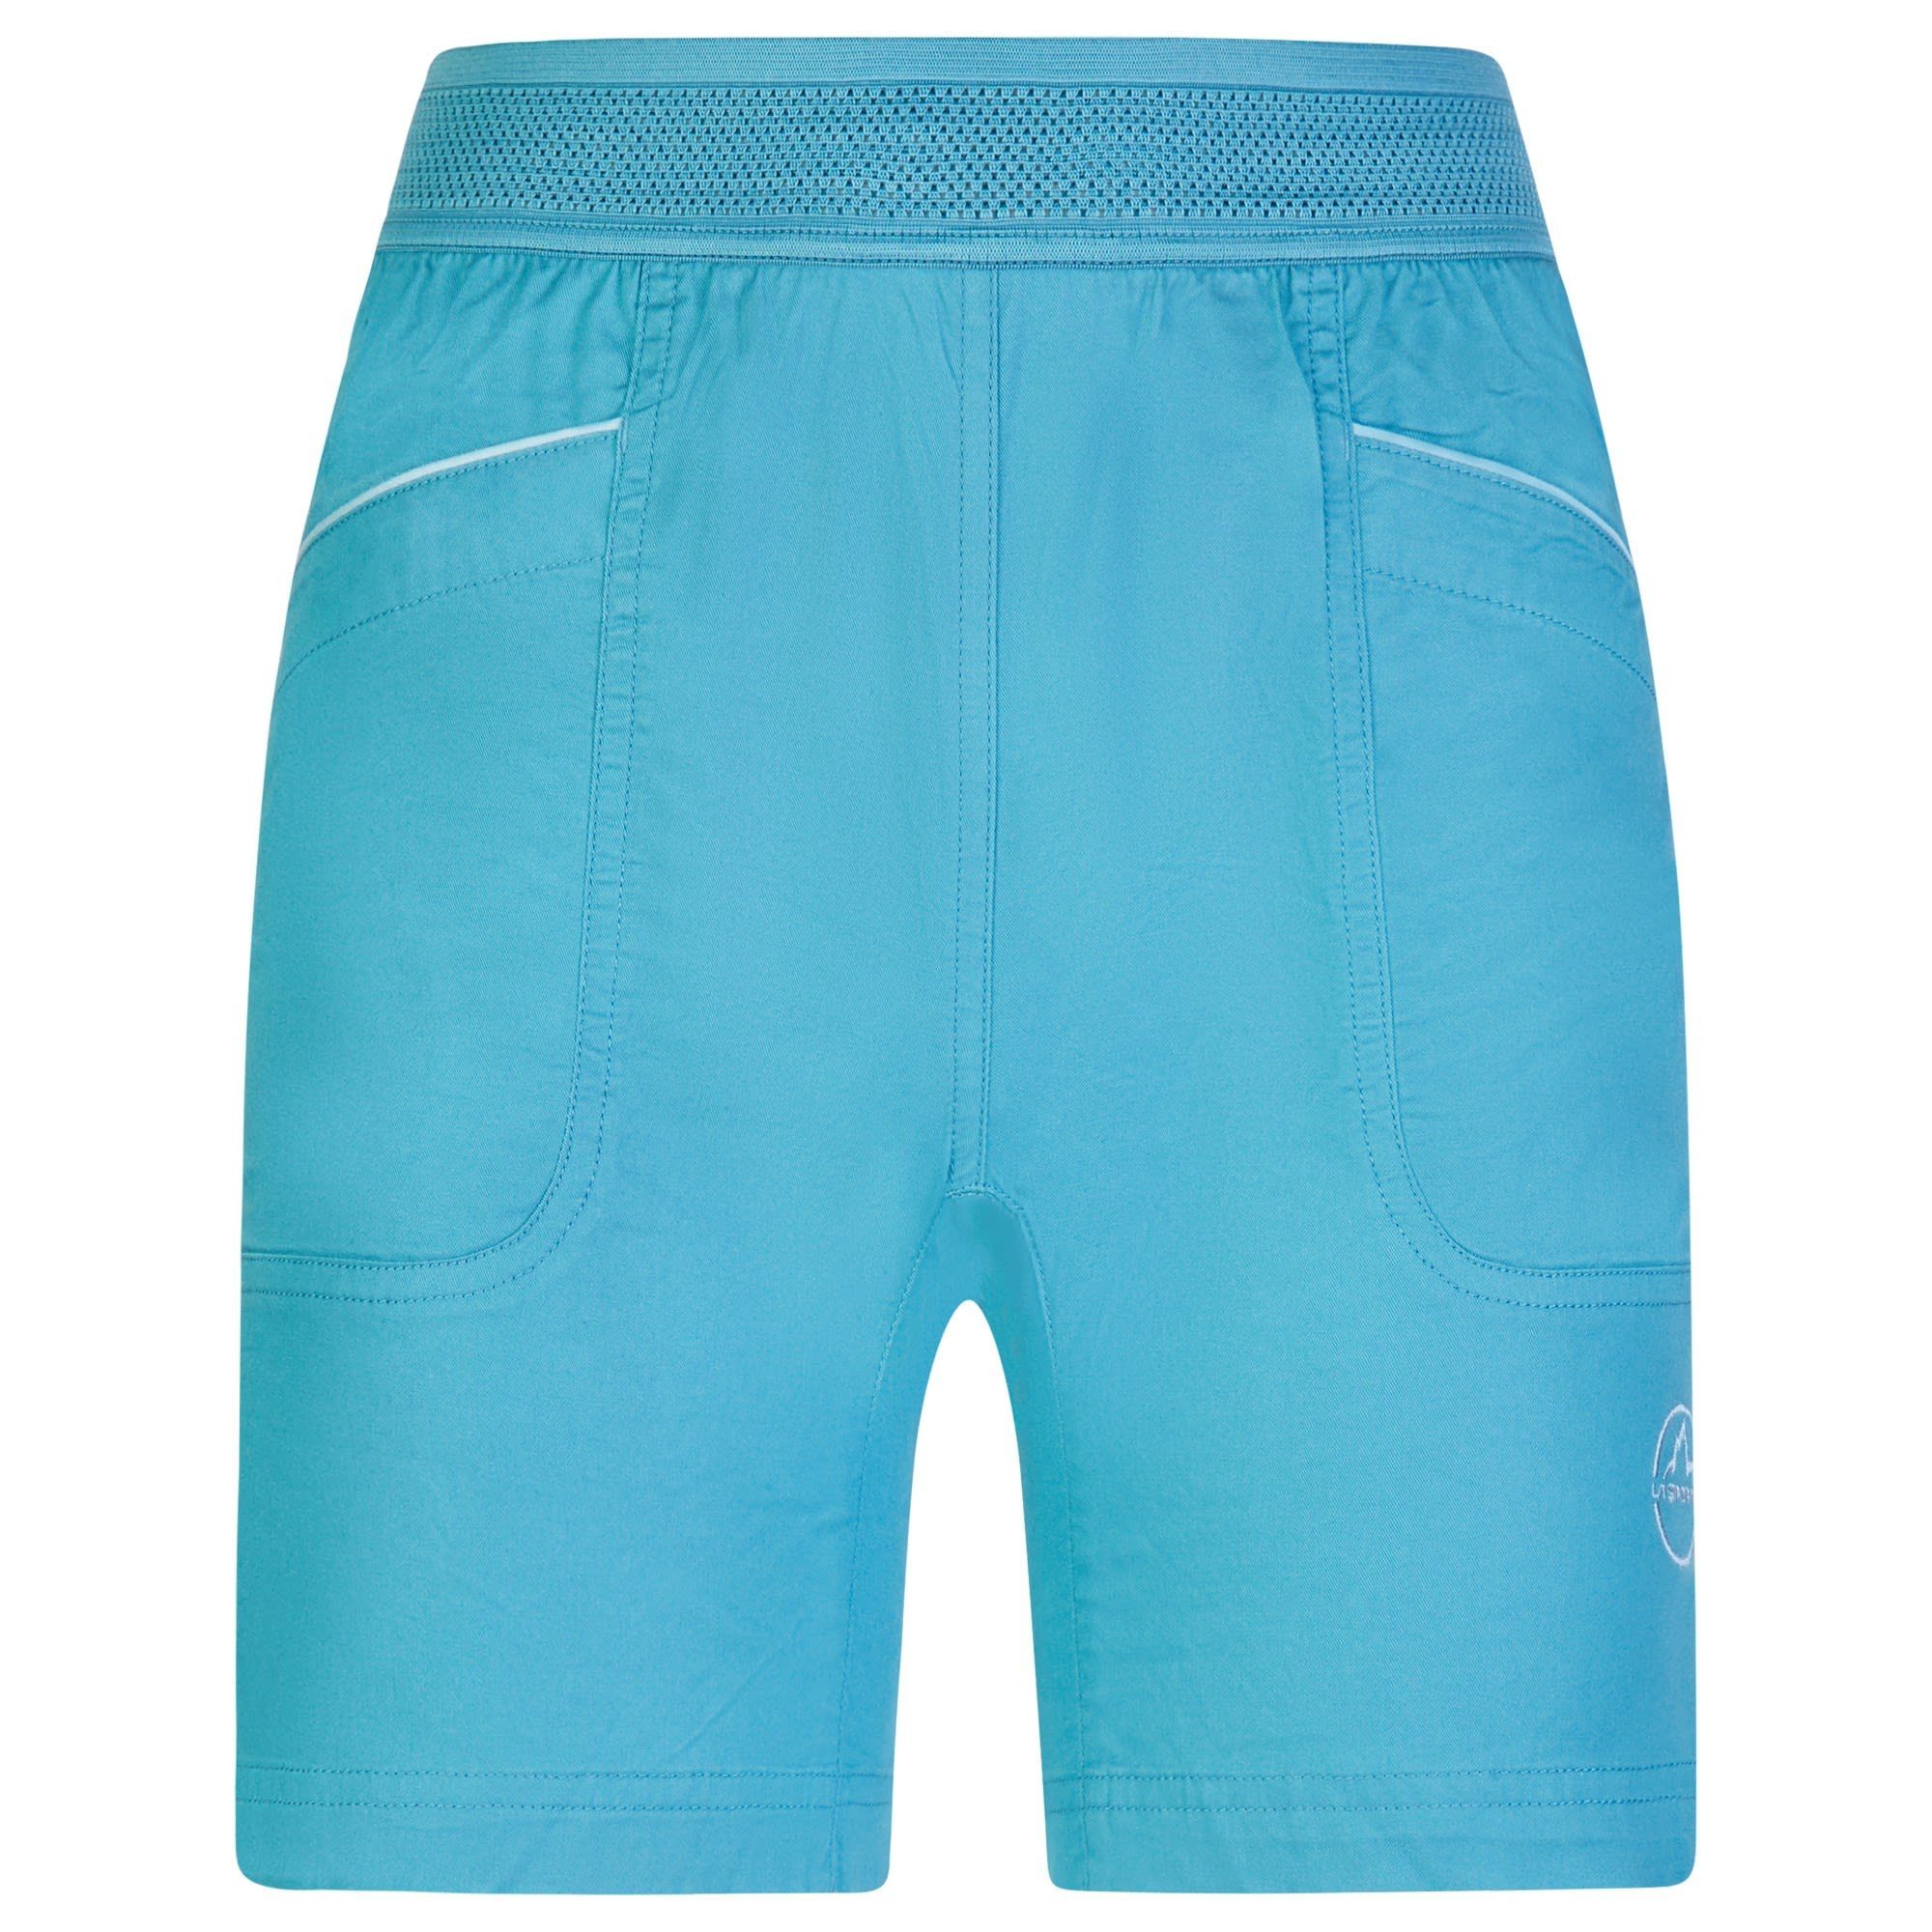 - Onyx Sportiva Strandshorts Topaz Damen Short Blue Blue W Shorts La Sportiva La